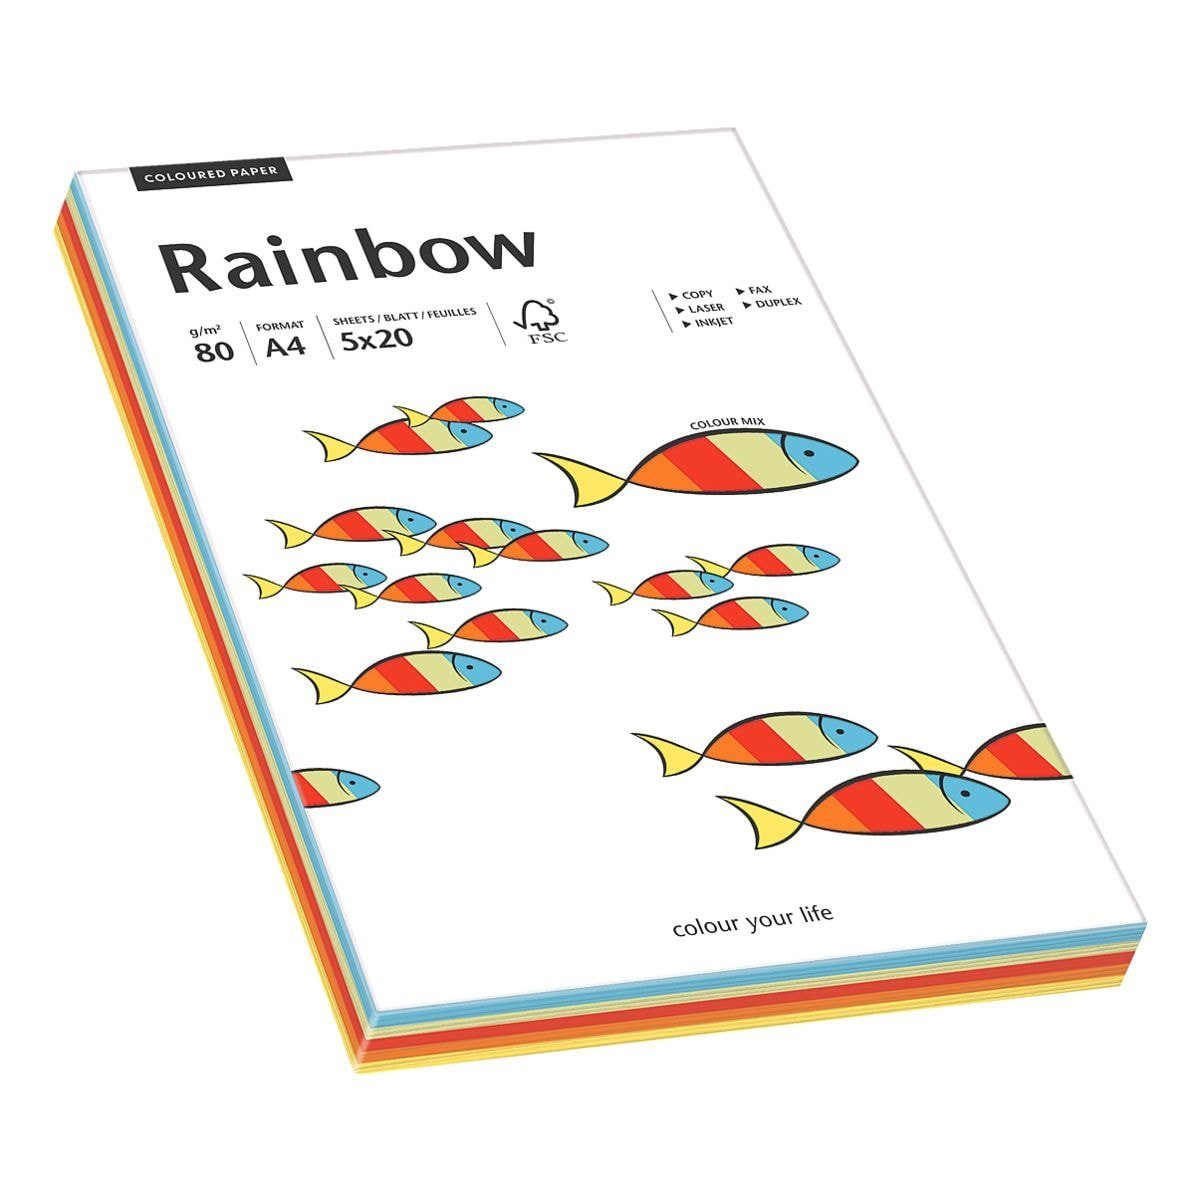 intensiv g/m² Kopierpapier sortiert Format Rainbow, 80 Drucker- A4, tecno DIN und Inapa Intensivfarben-Mix,